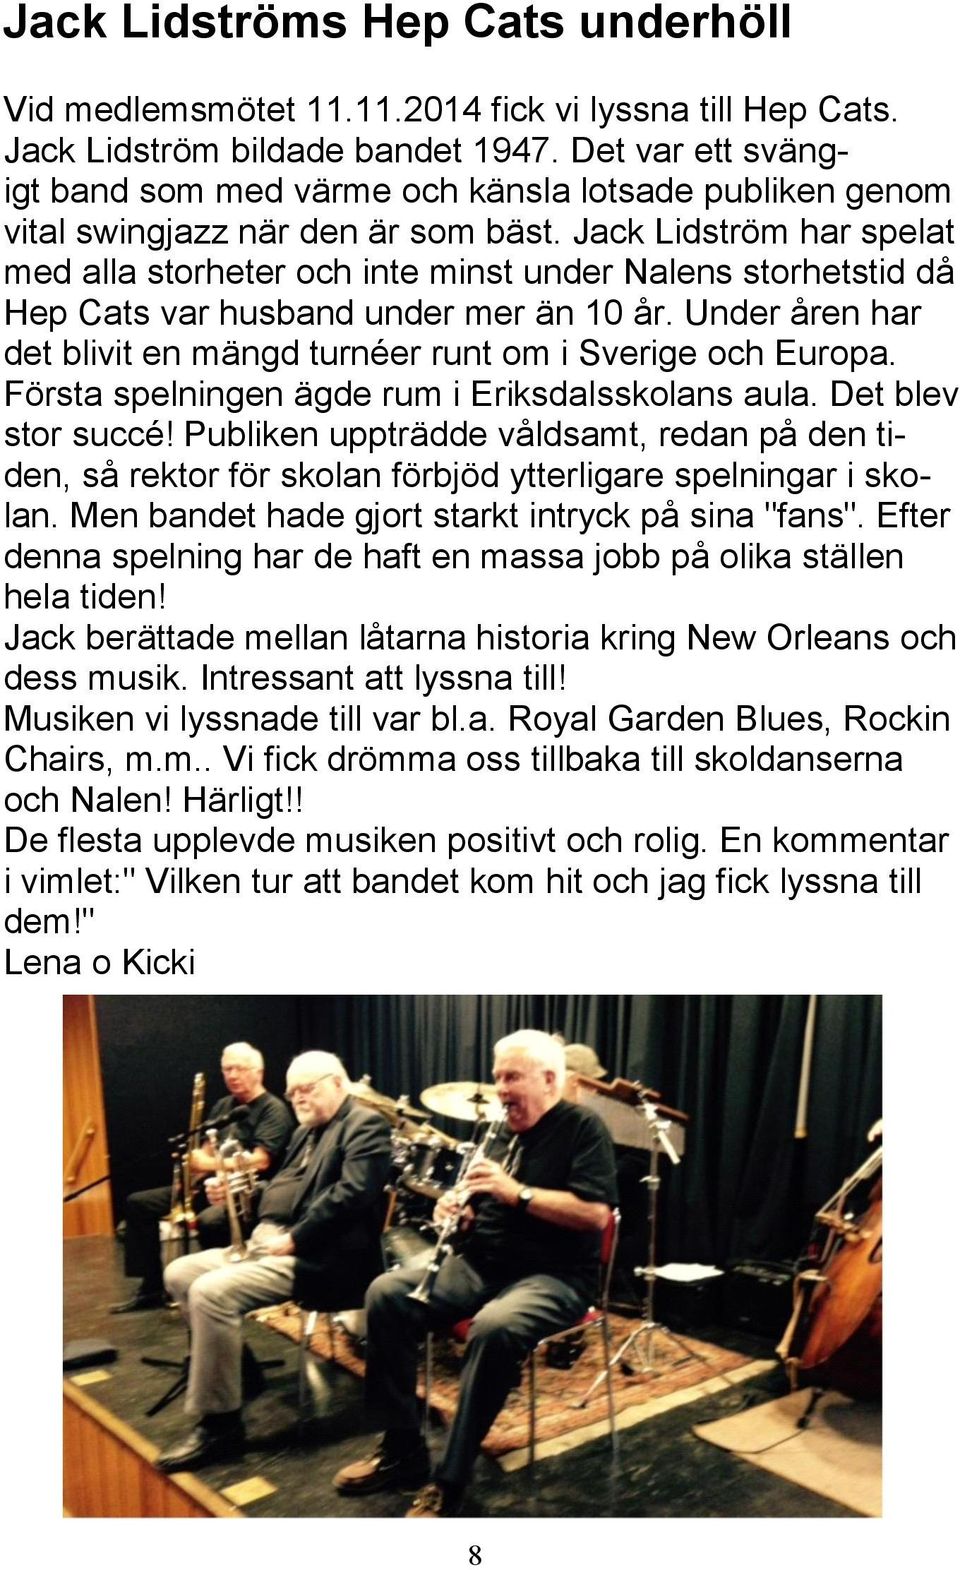 Jack Lidström har spelat med alla storheter och inte minst under Nalens storhetstid då Hep Cats var husband under mer än 10 år. Under åren har det blivit en mängd turnéer runt om i Sverige och Europa.